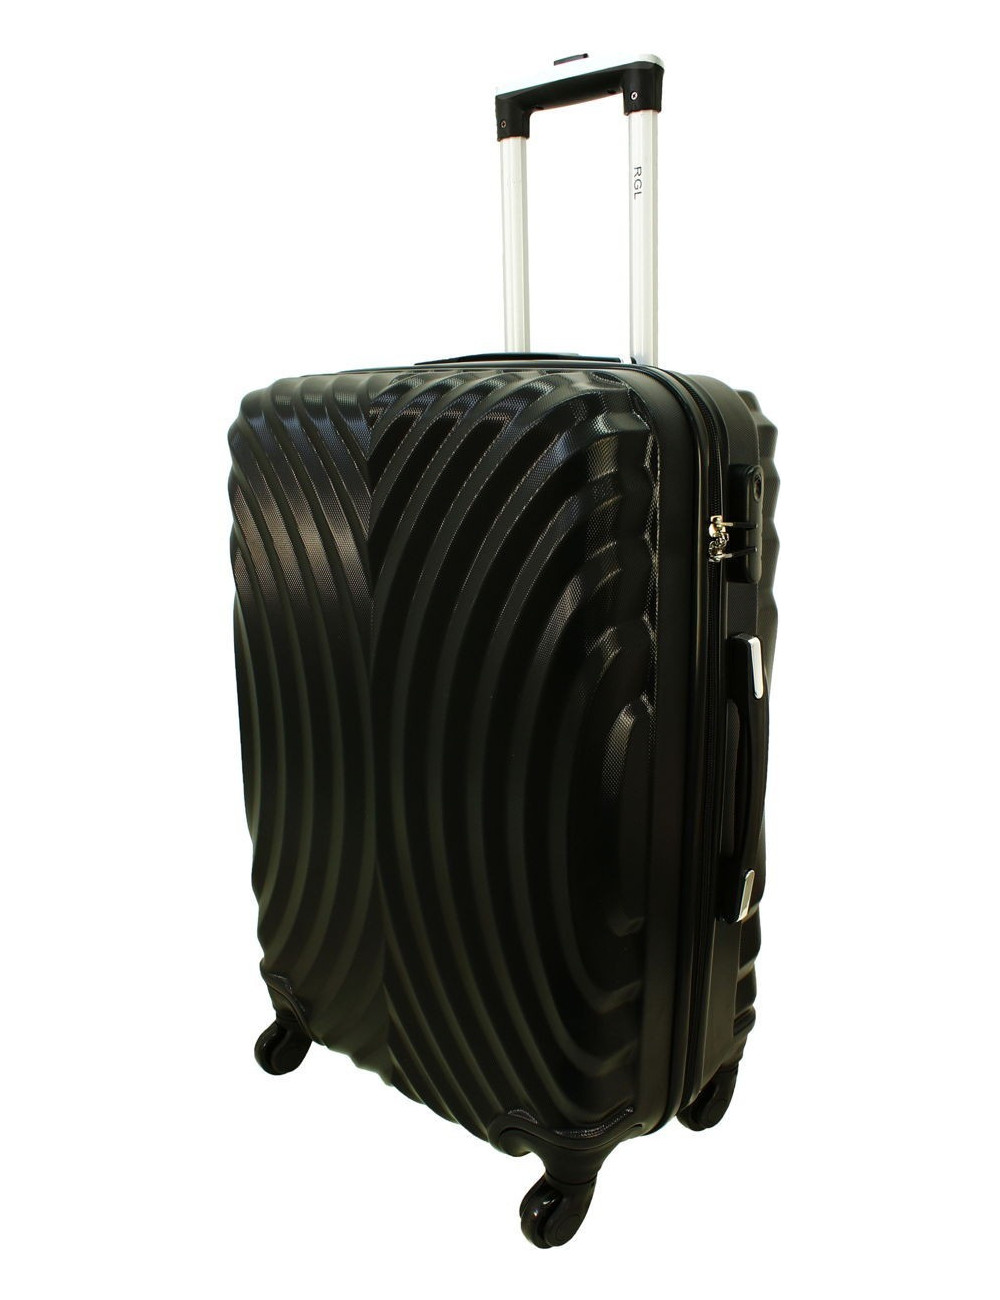 Duża walizka podróżna na kółkach 760 XXL - Czarny